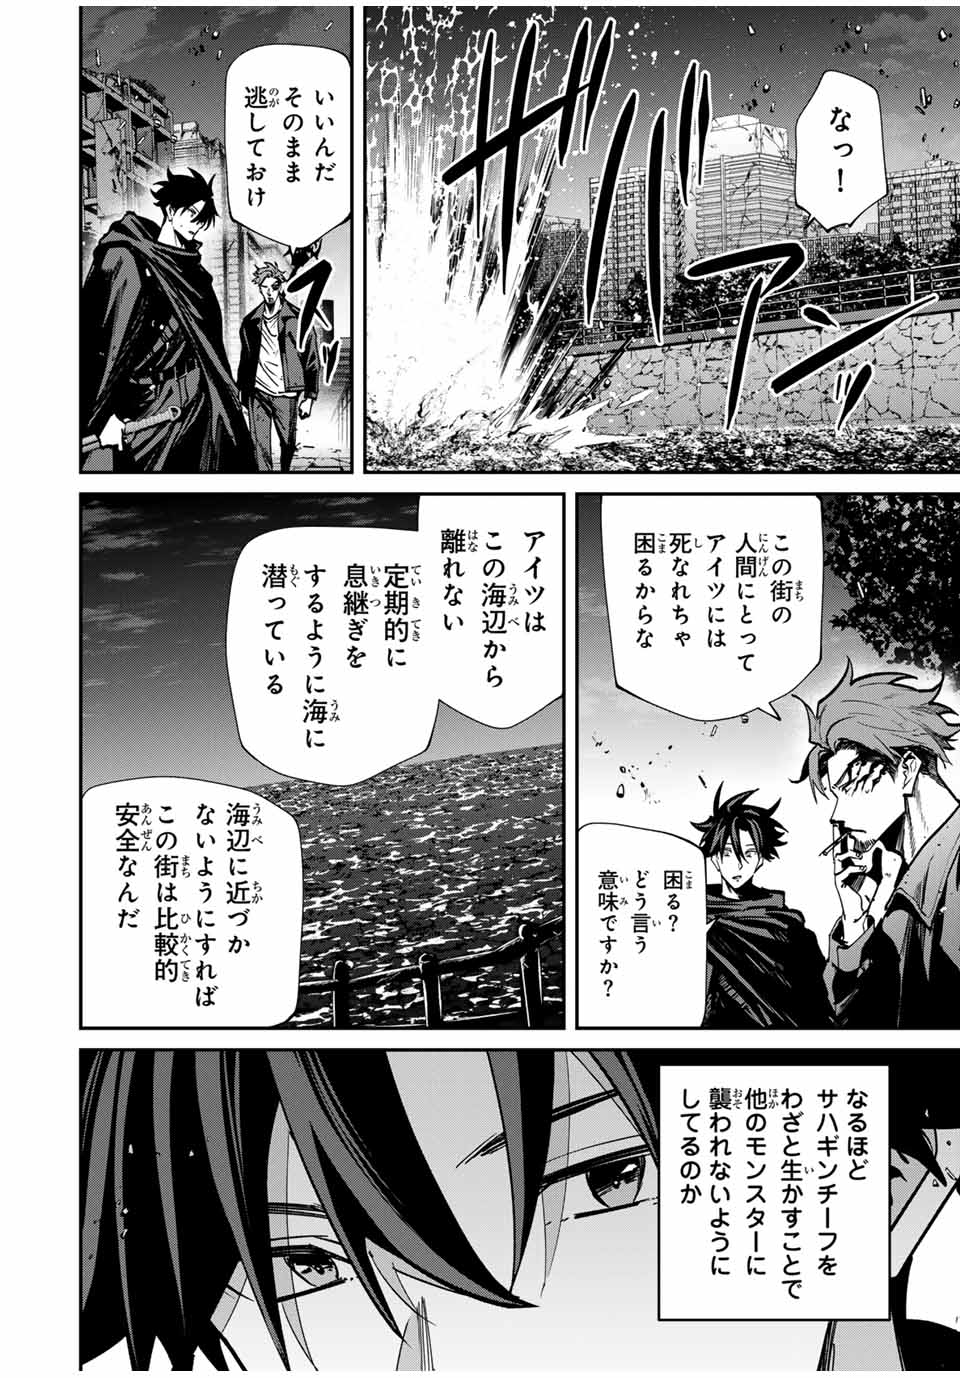 Kono Sekai ga Izure Horobu Koto wo, Ore dake ga Shitte Iru - Chapter 73 - Page 4